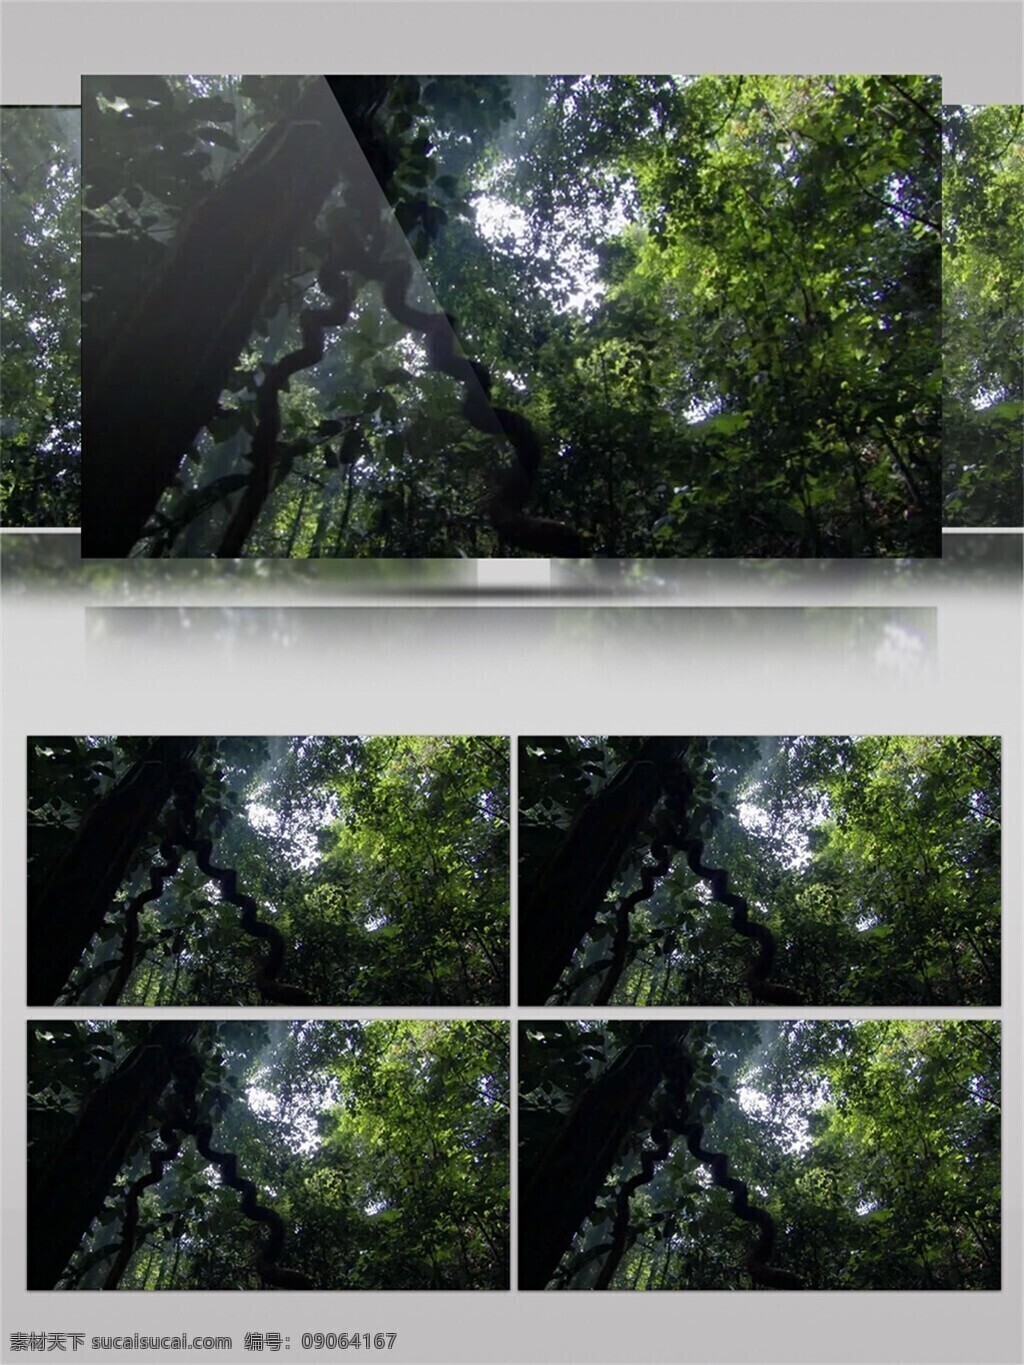 春树暮云 视频 音效 光线 树木 绿色 植物 视频素材 视频音效 自然风光